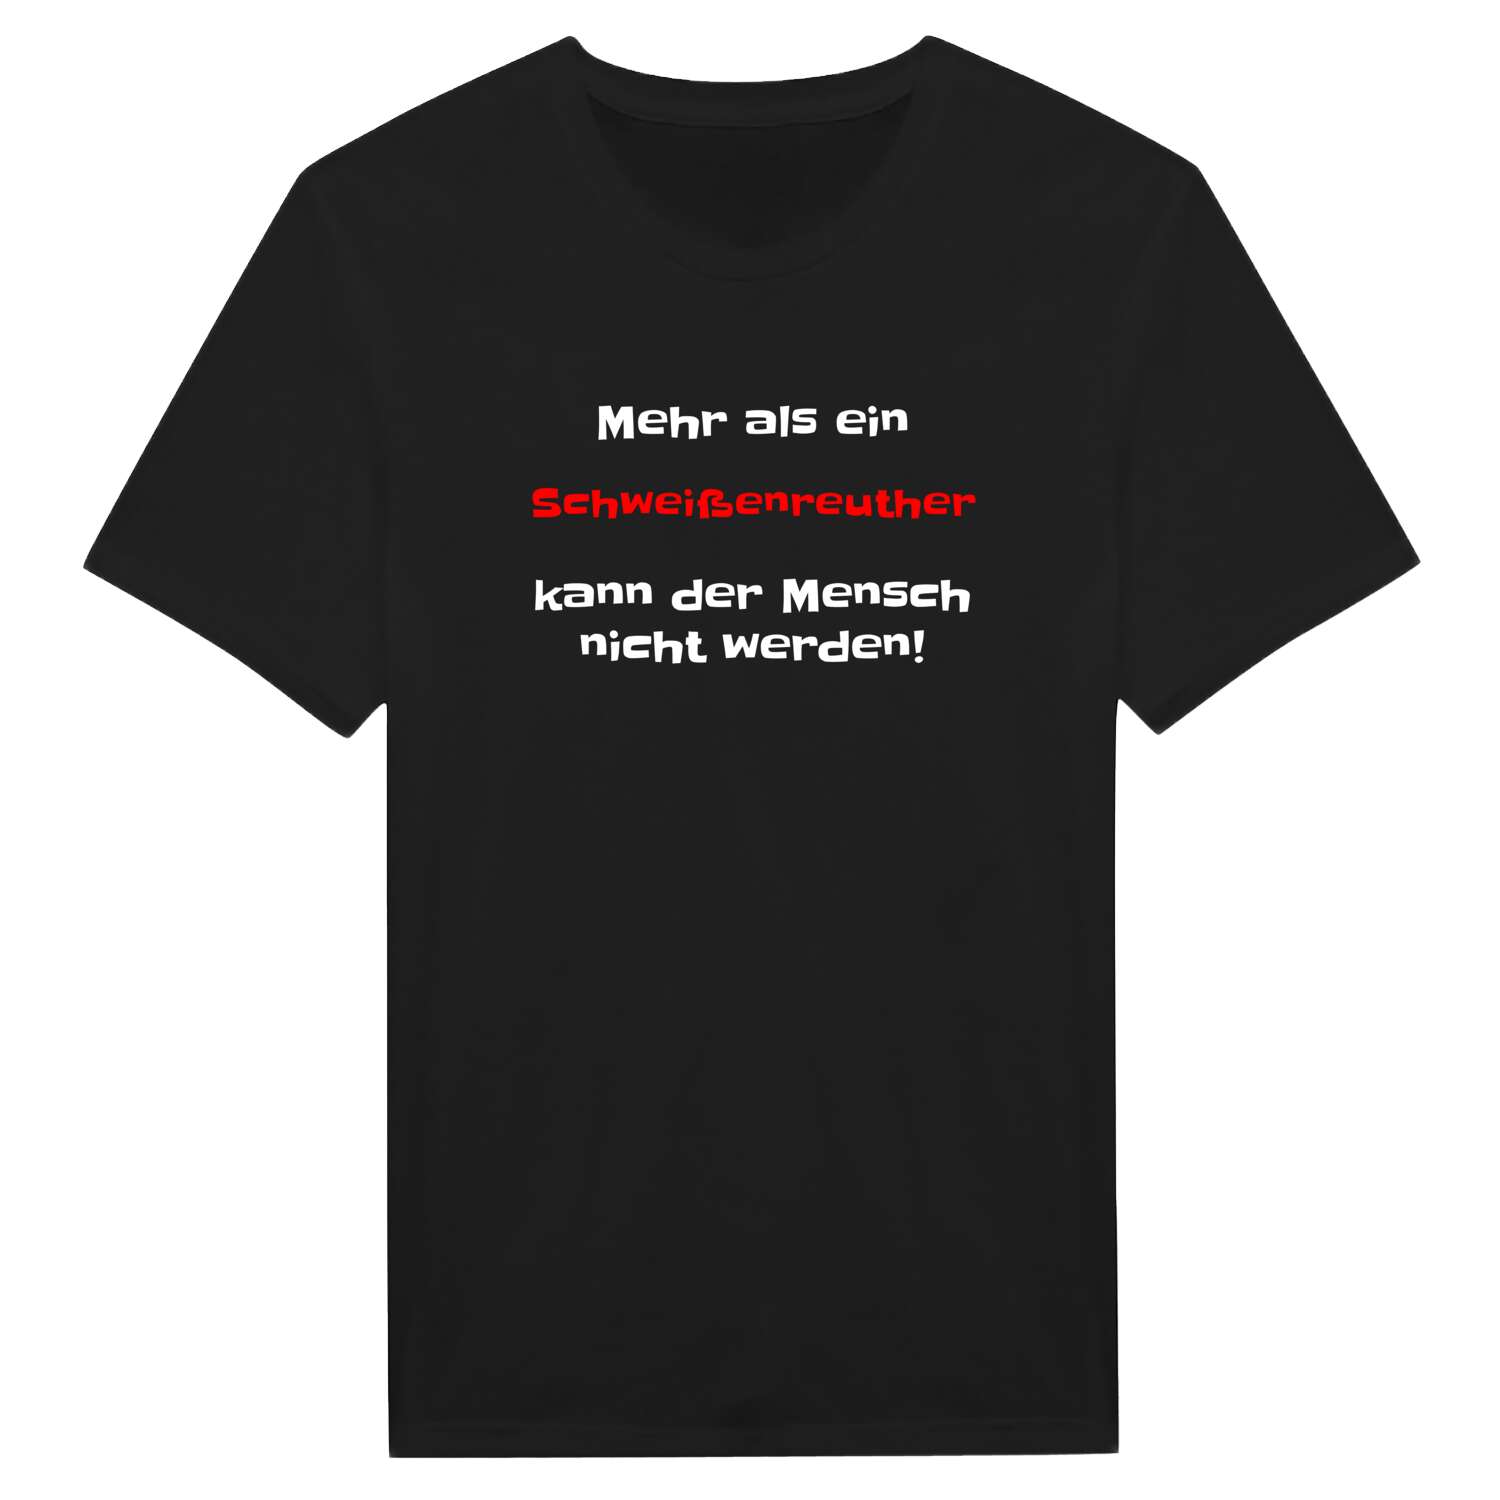 Schweißenreuth T-Shirt »Mehr als ein«